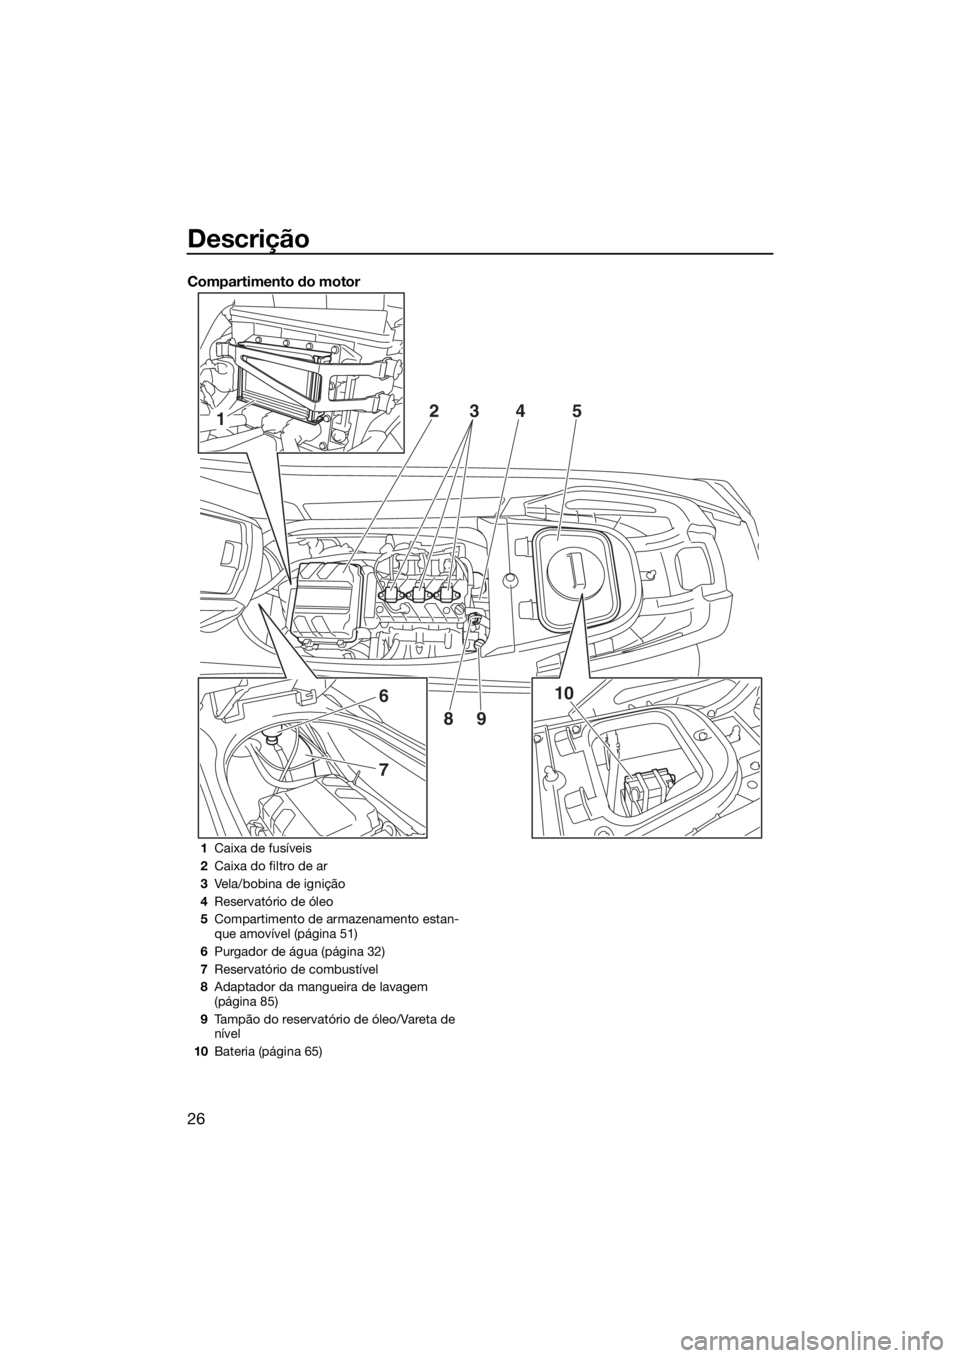 YAMAHA VX 2018  Manual de utilização (in Portuguese) Descrição
26
Compartimento do motor
1
6
7
10 2
345
89
1Caixa de fusíveis
2Caixa do filtro de ar
3Vela/bobina de ignição
4Reservatório de óleo
5Compartimento de armazenamento estan-
que amovíve